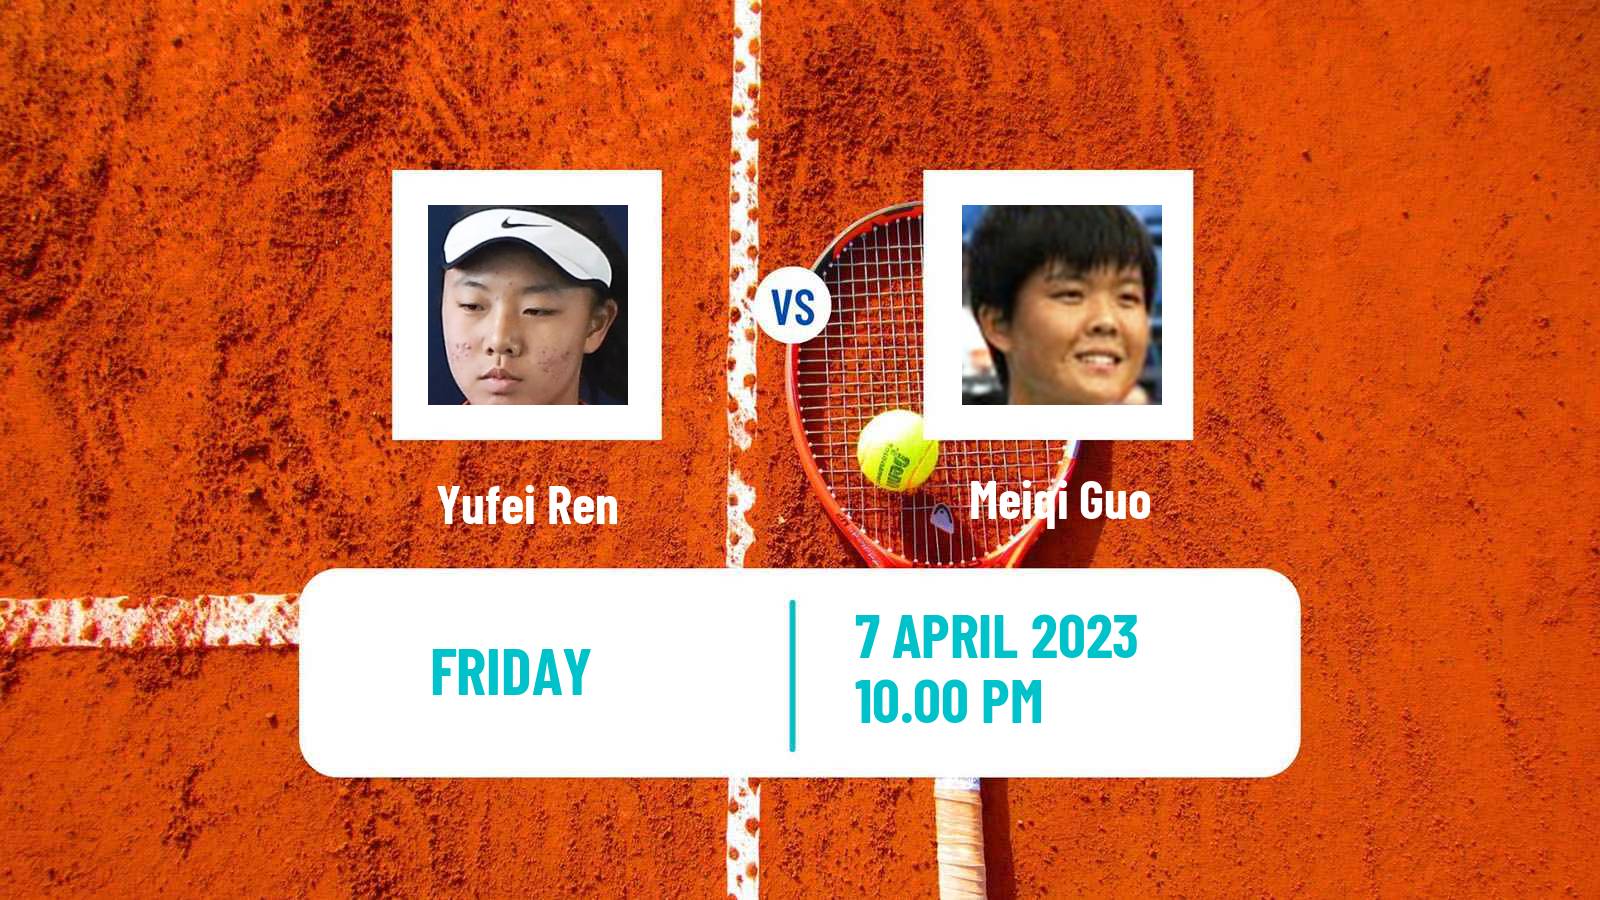 Tennis ITF Tournaments Yufei Ren - Meiqi Guo